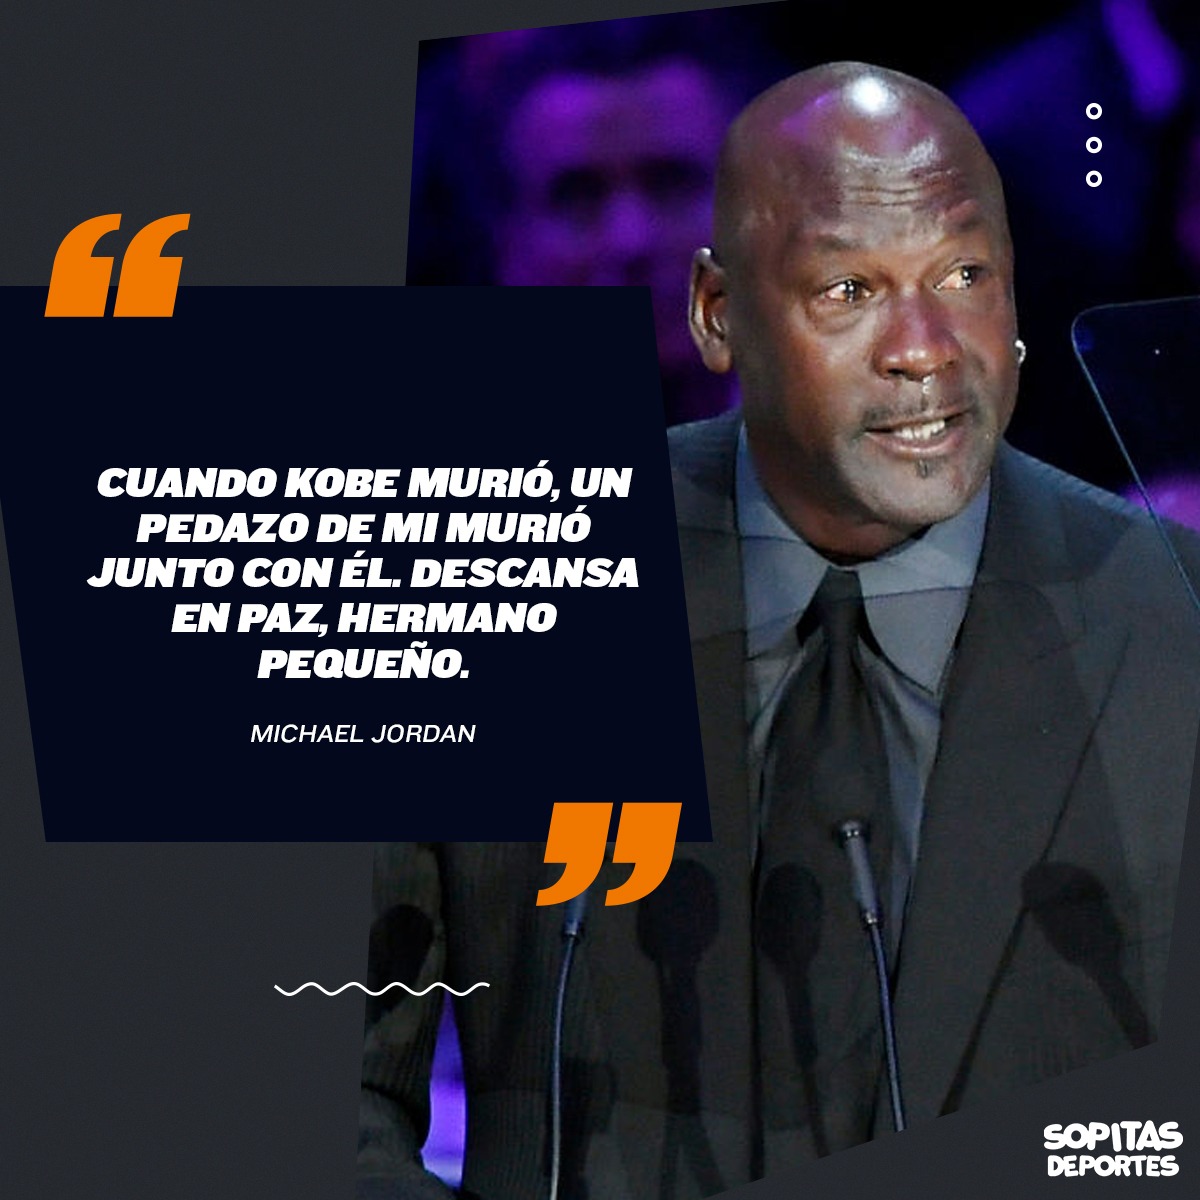 Acá te dejamos el discurso completo de Michael Jordan en el memorial a Kobe Bryant